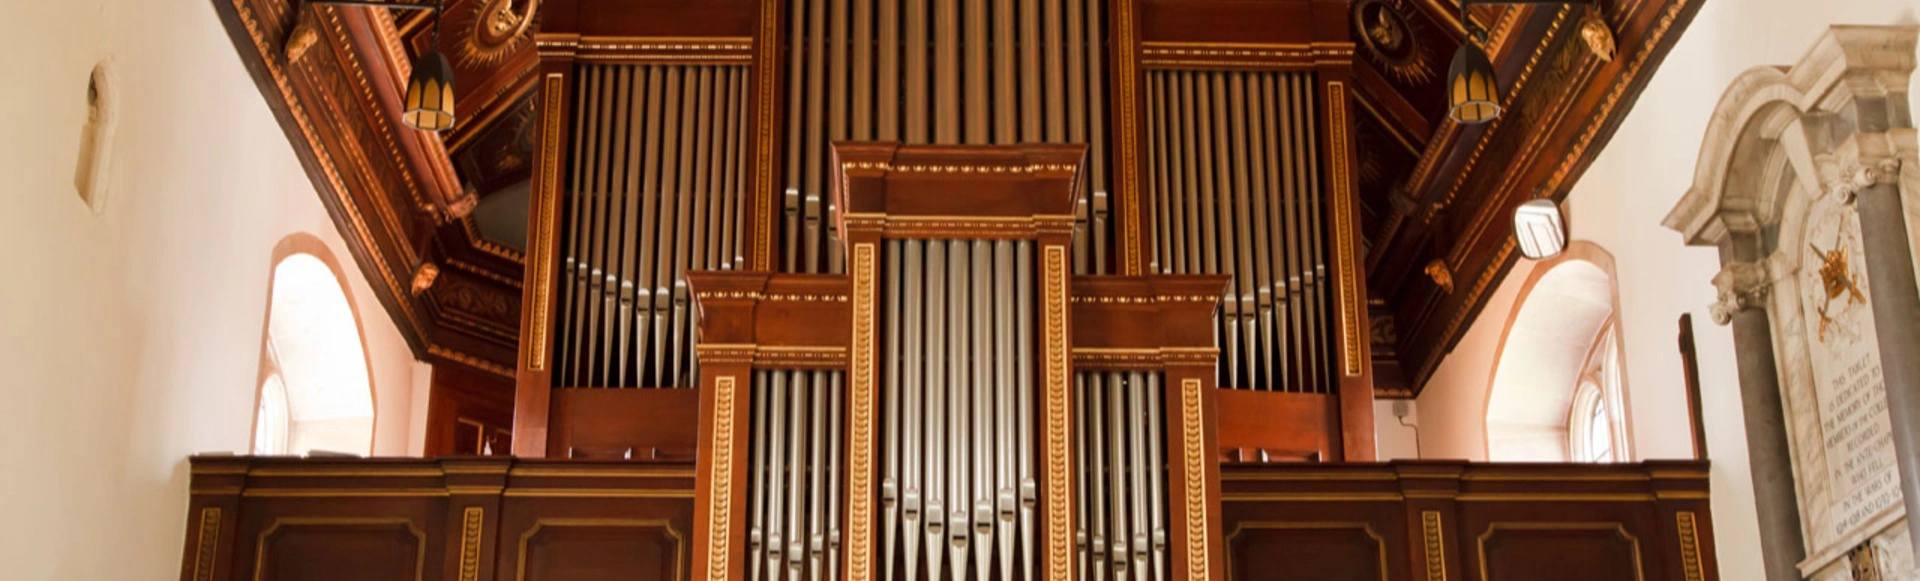 Гранд орган симфонии гала. Вивальди «Времена года» и великие органные шедевры